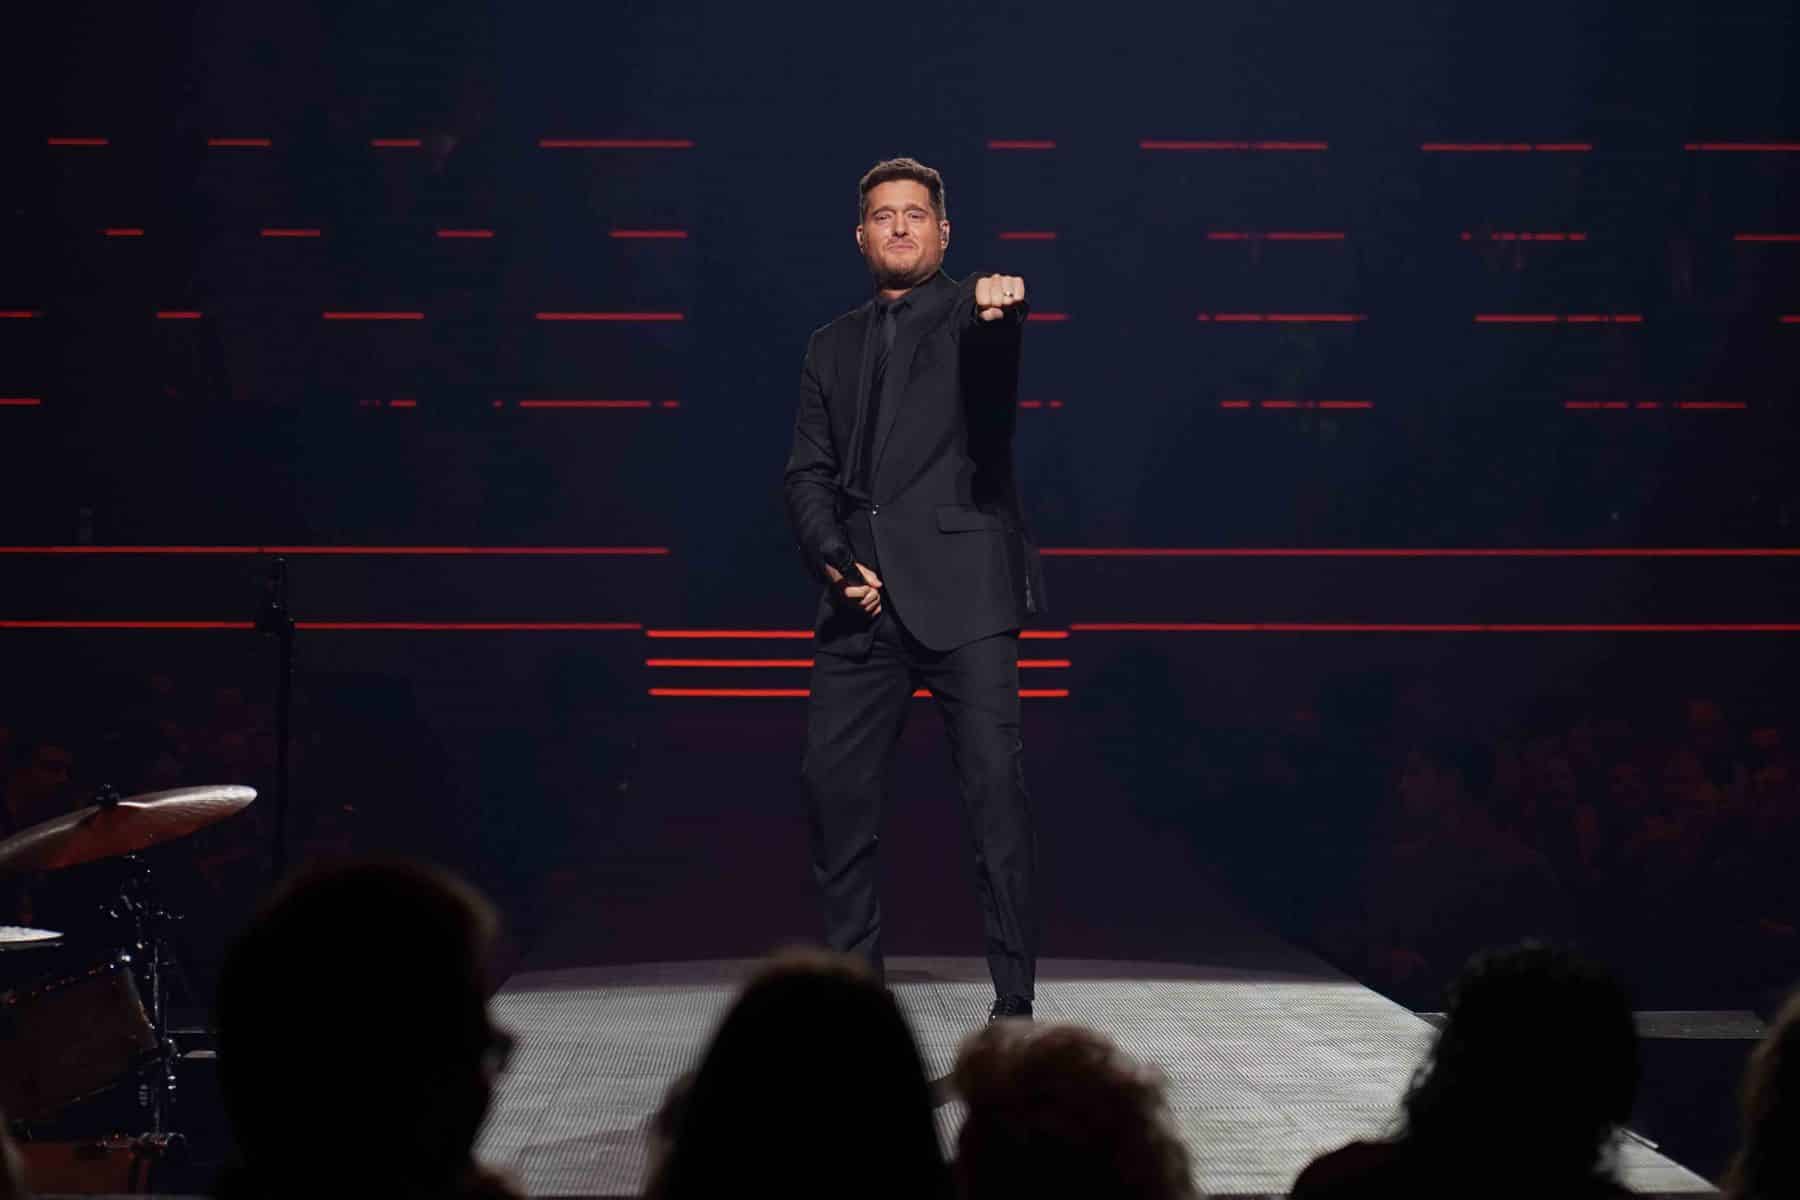 18.03.2023 Michael Bublé präsentierte sein herausragendes Repertoire in der SAP Arena Mannheim.
Foto © by Boris Korpak/ bokopictures